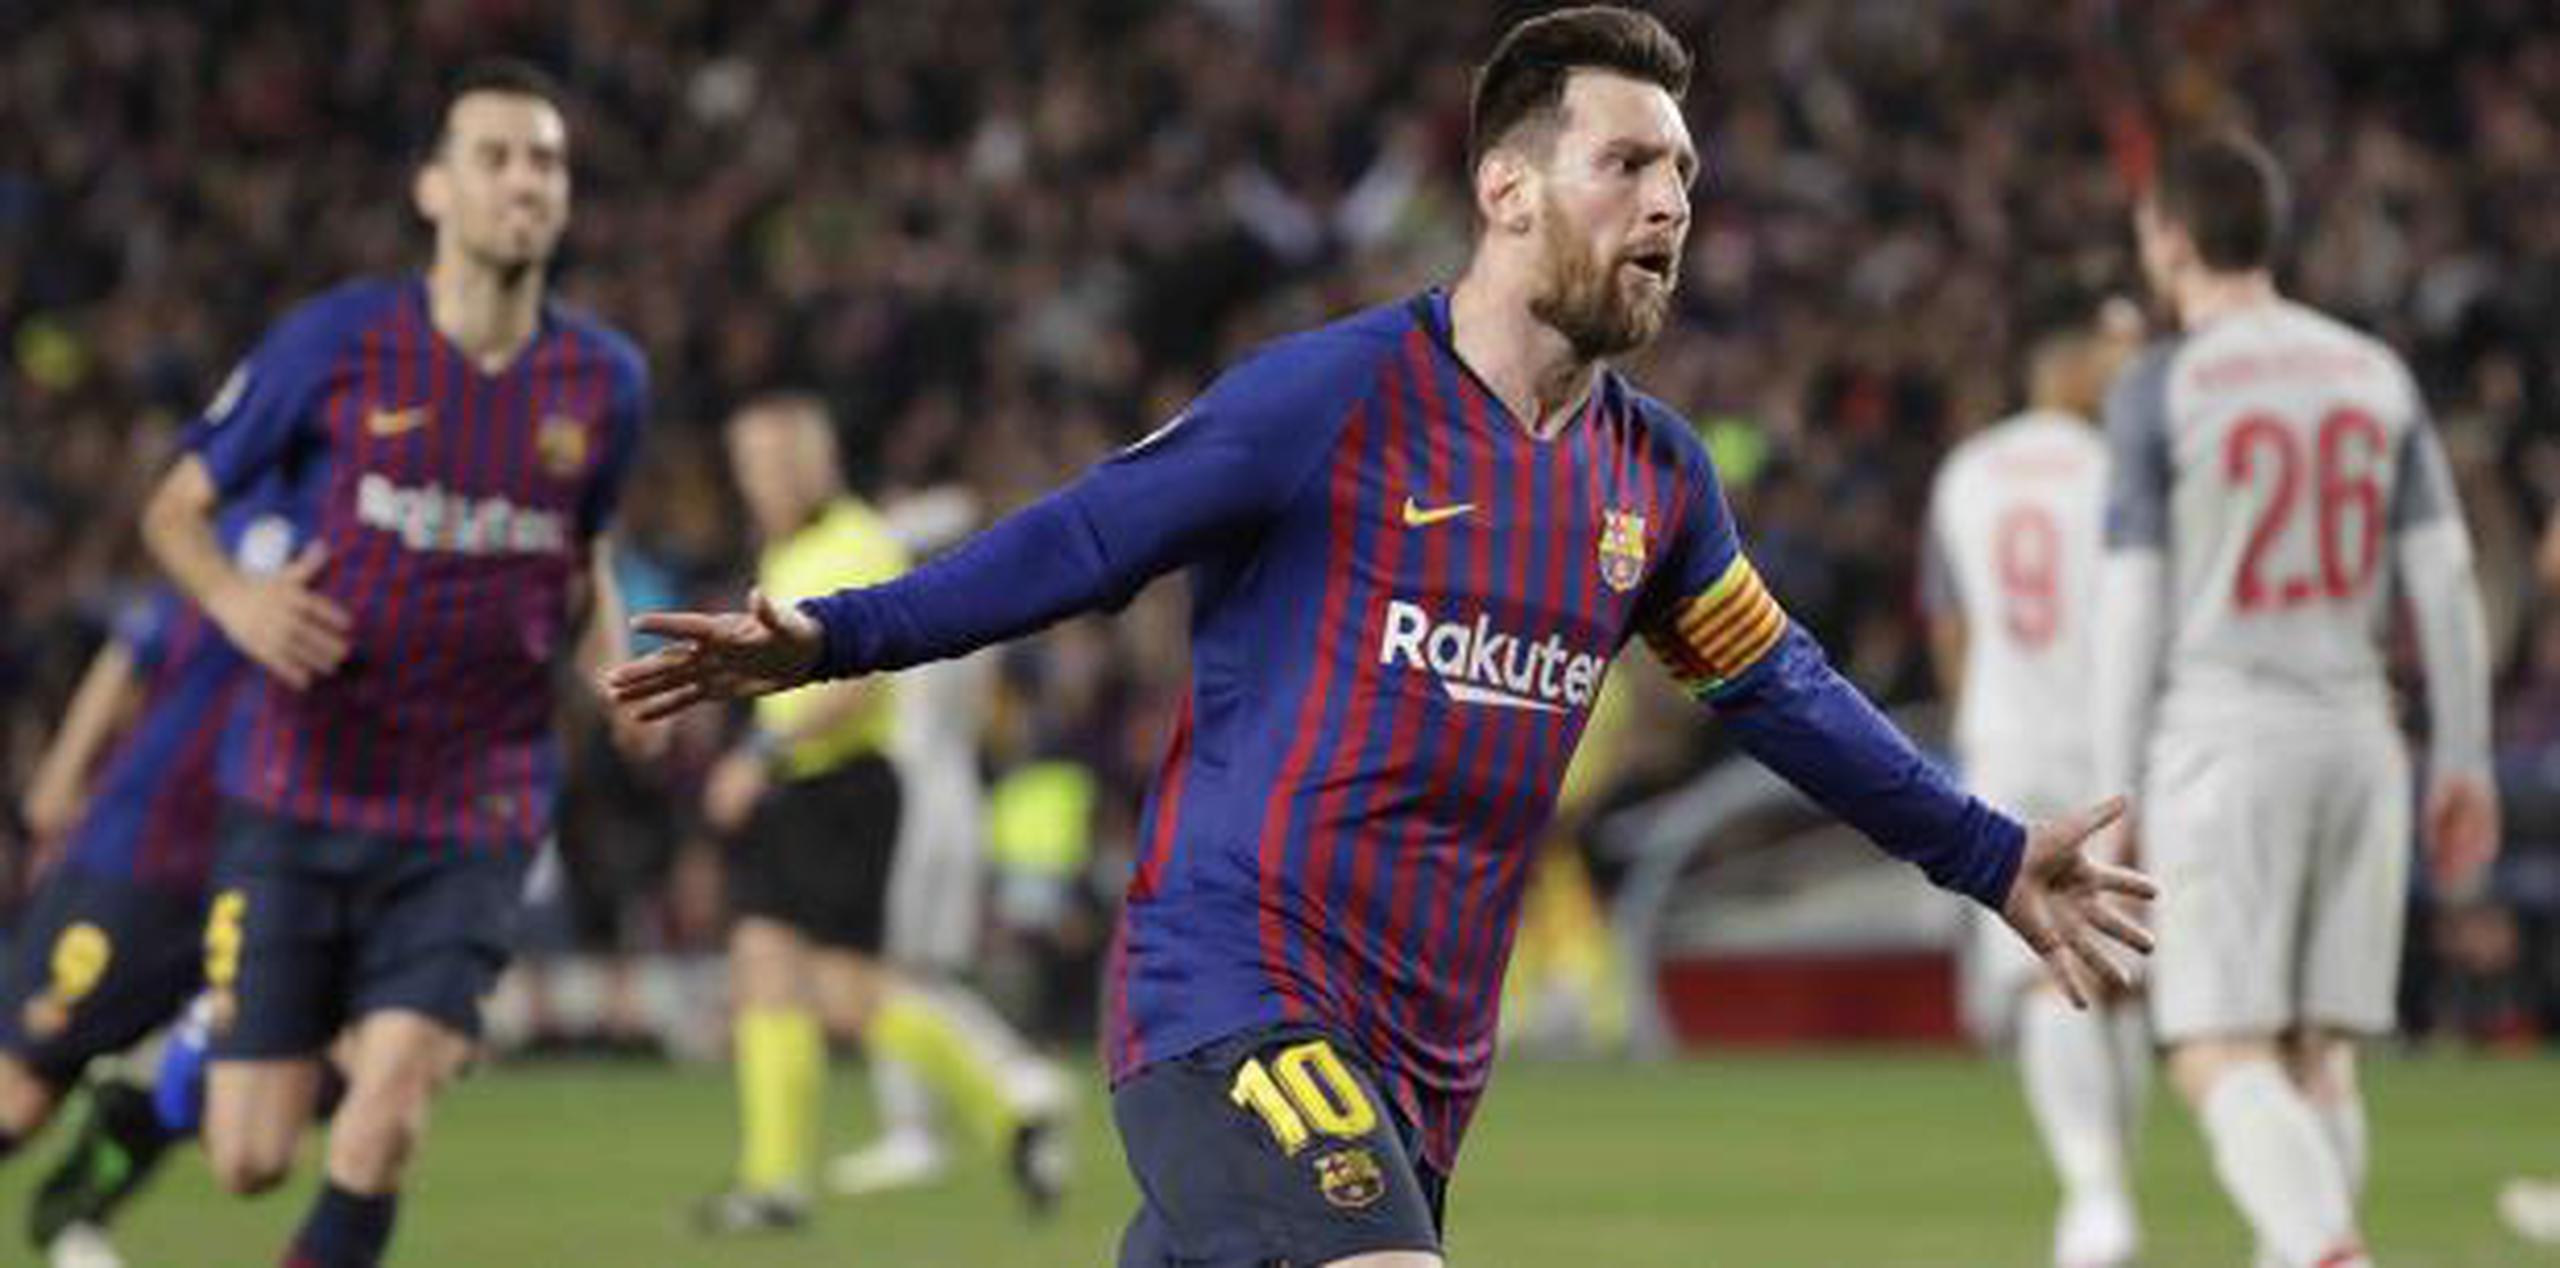 Lionel Messi marcó ayer el gol 600 de su carrera con el club Barcelona. El equipo está en buena posición para avanzar a la final de la Champions. (AP / Emilio Morenatti)